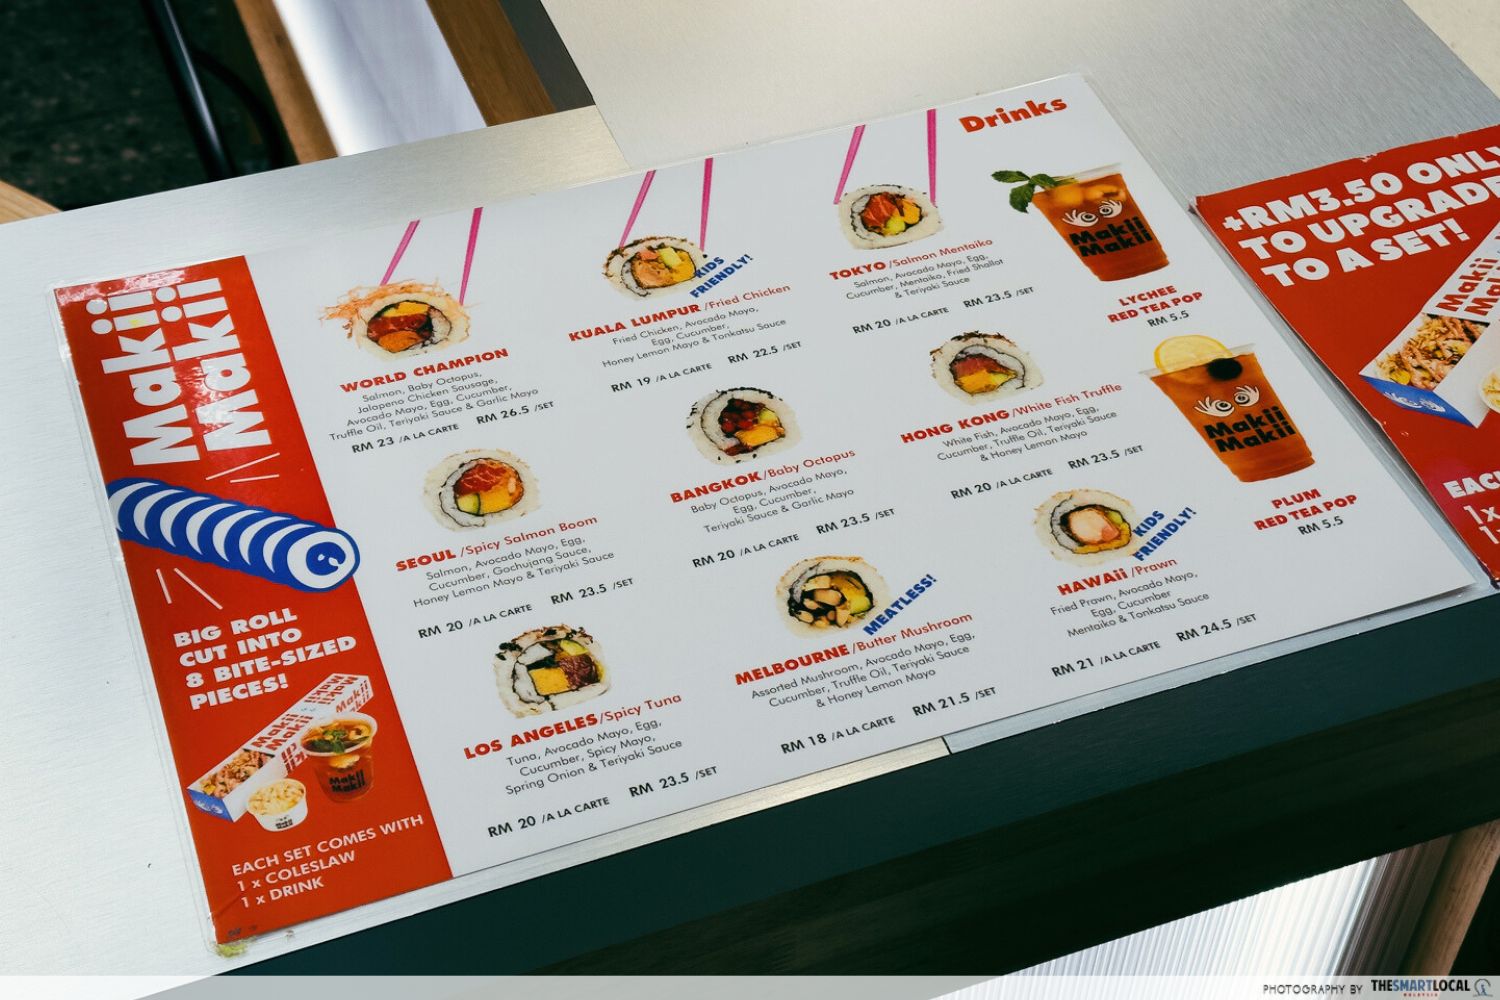 makii makii menu, featuring maki rolls named after big cities